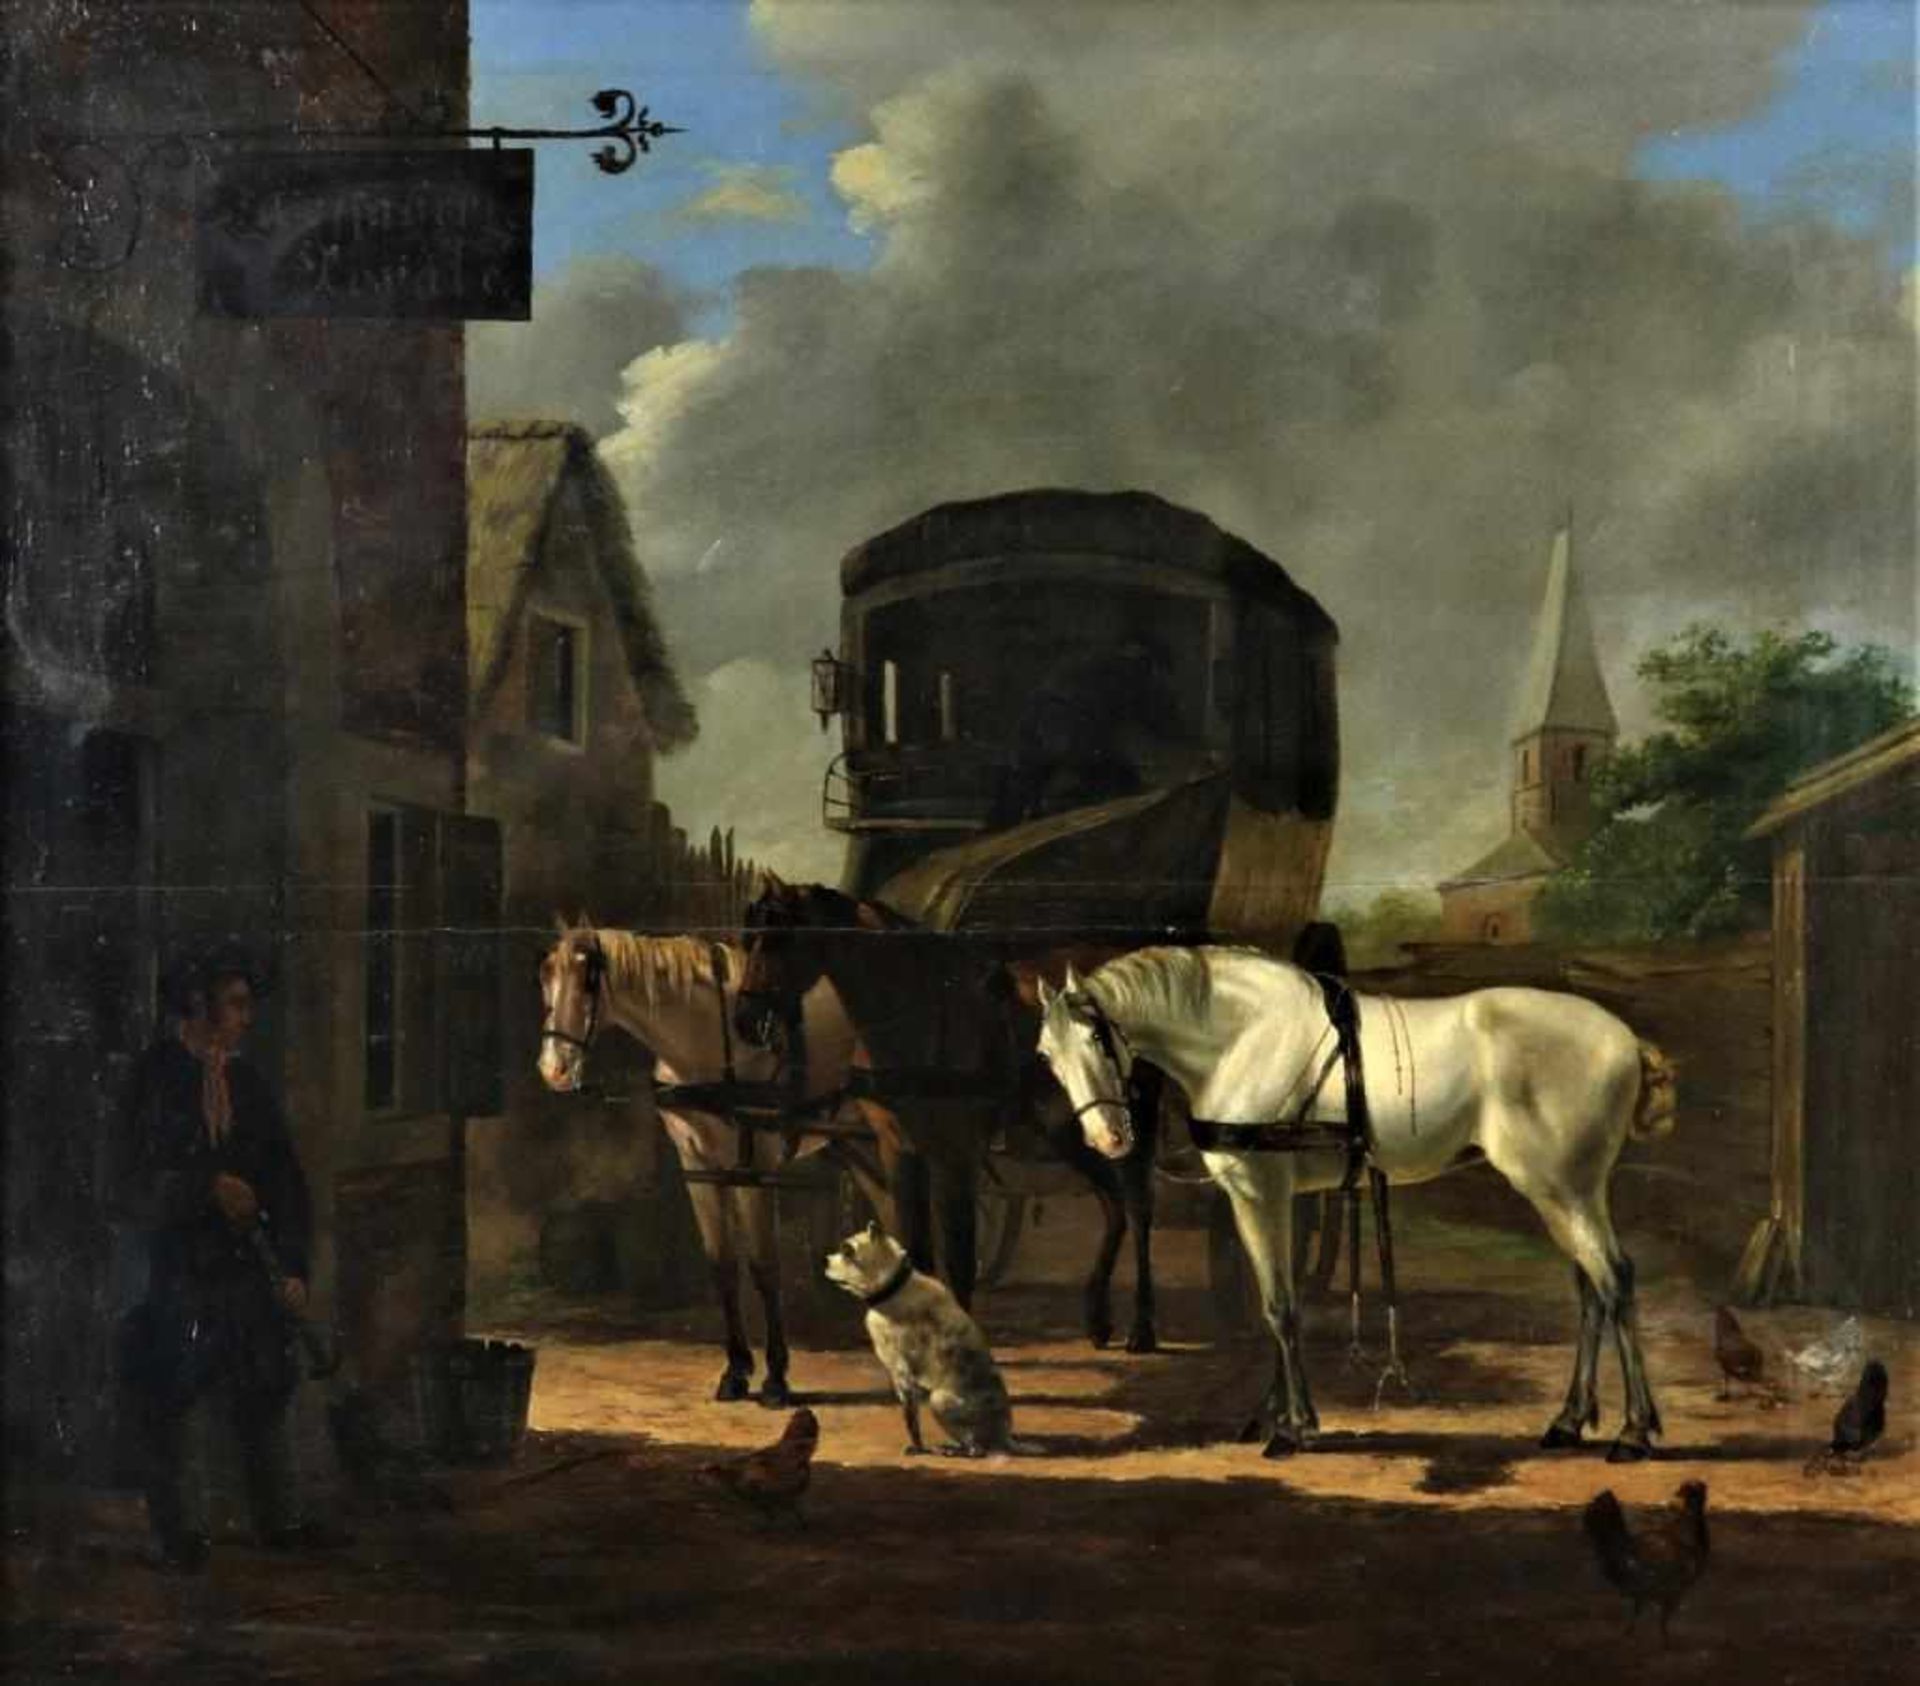 Hare, J. ges. en gedat. 1828 r.o., diligence met paarden, paneel 46 x 54 cm.